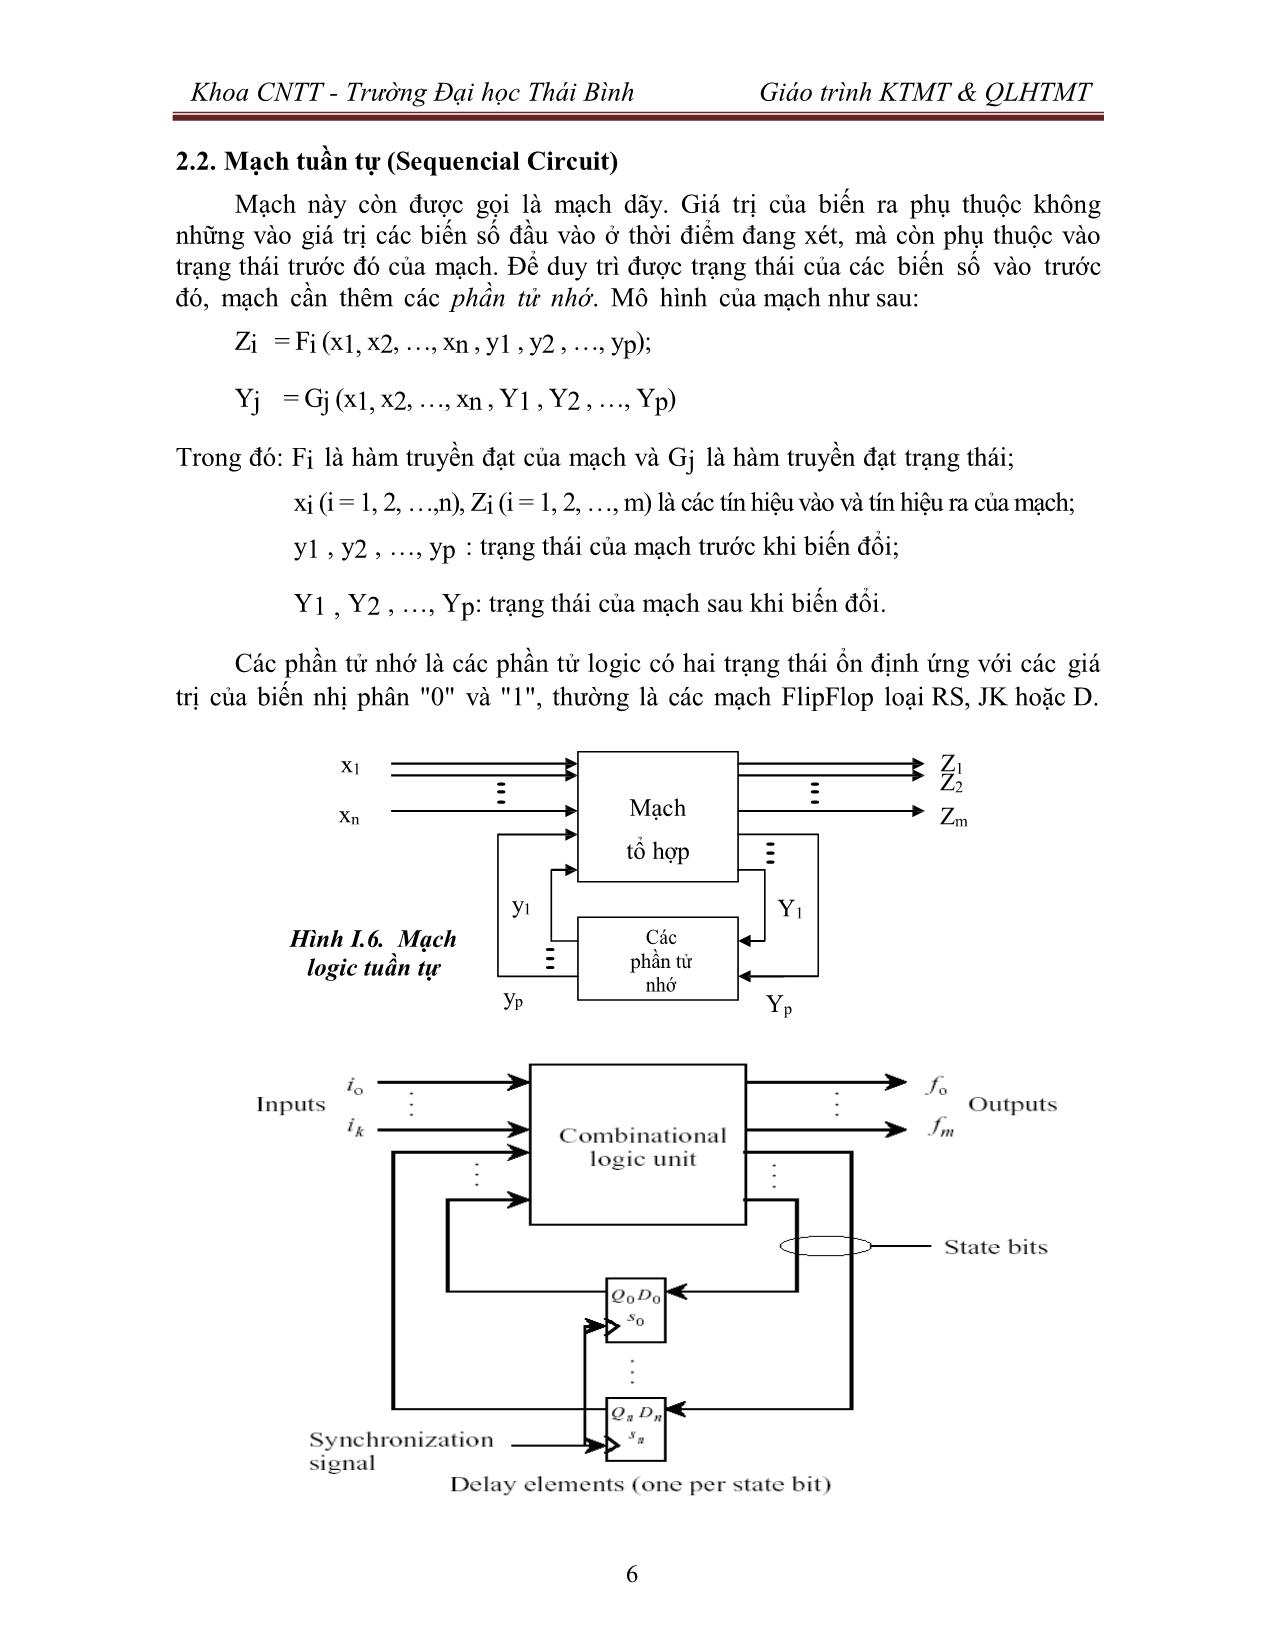 Giáo trình Kiến trúc máy tính & Quản lý hệ thống máy tính (Phần 1) trang 7